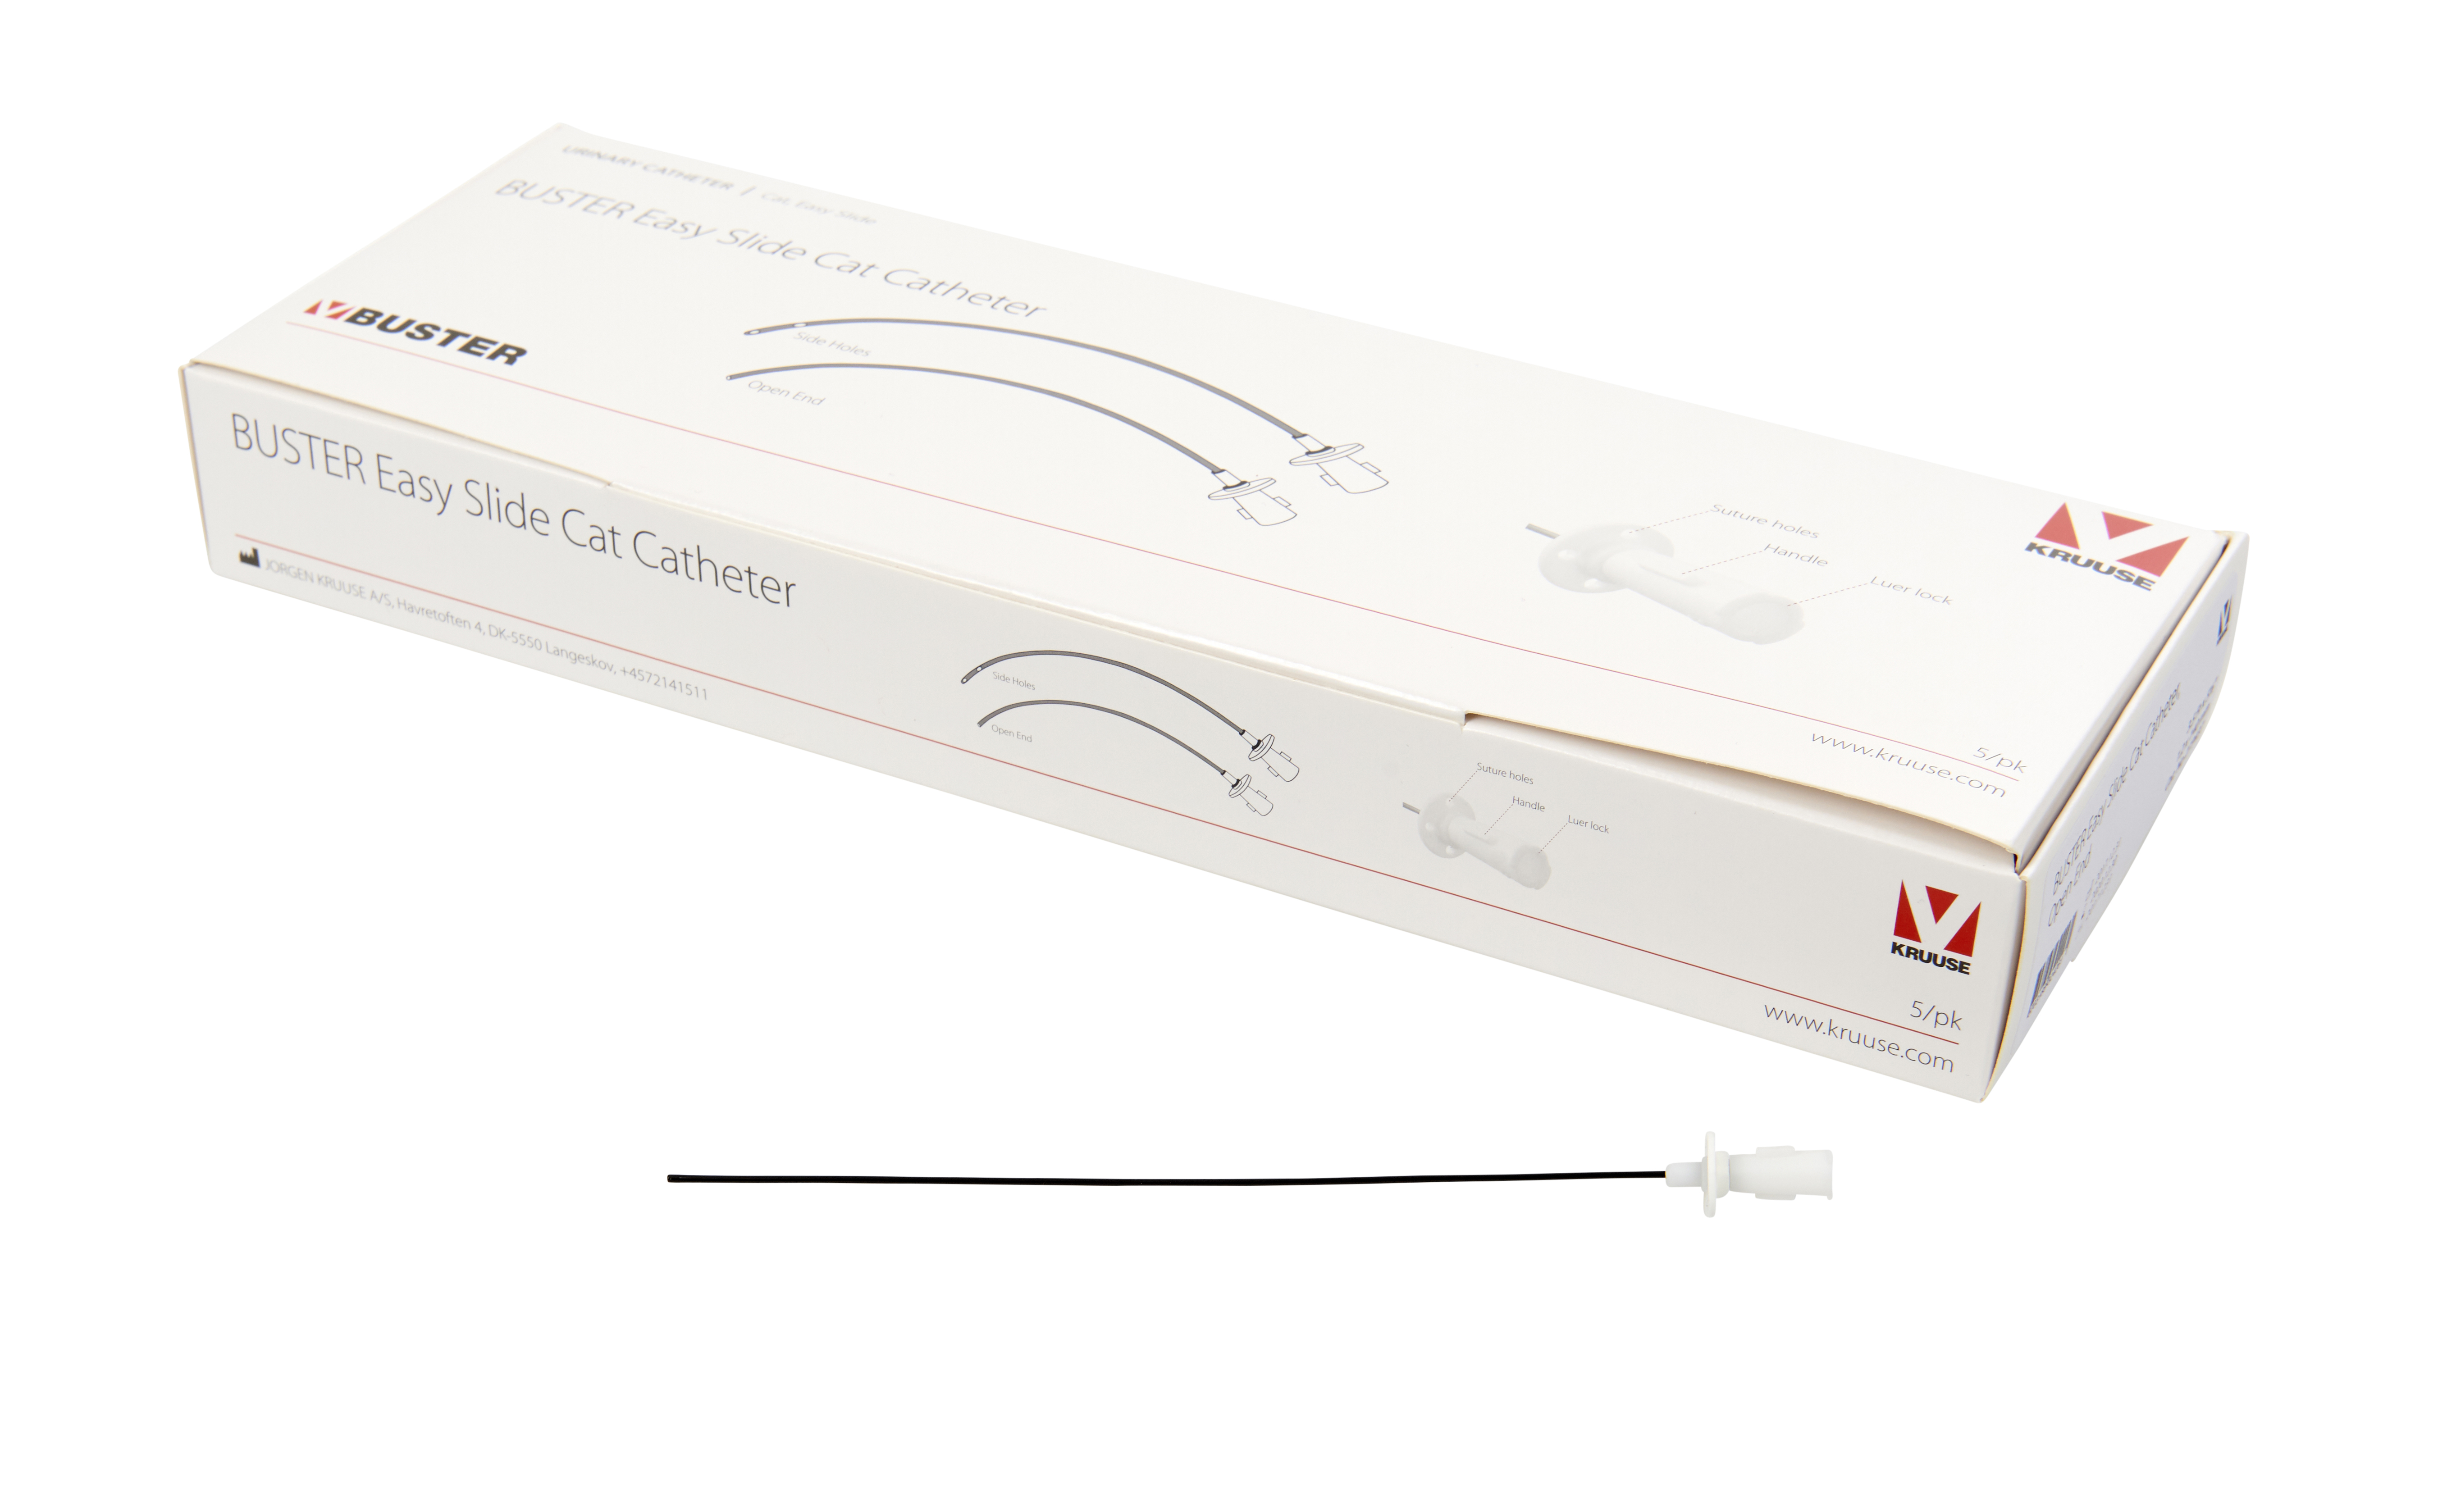 BUSTER Easy Slide Cat Catheter, 3.5 Fr x 6”, 1.2 x 140 mm, open end, 5/pk